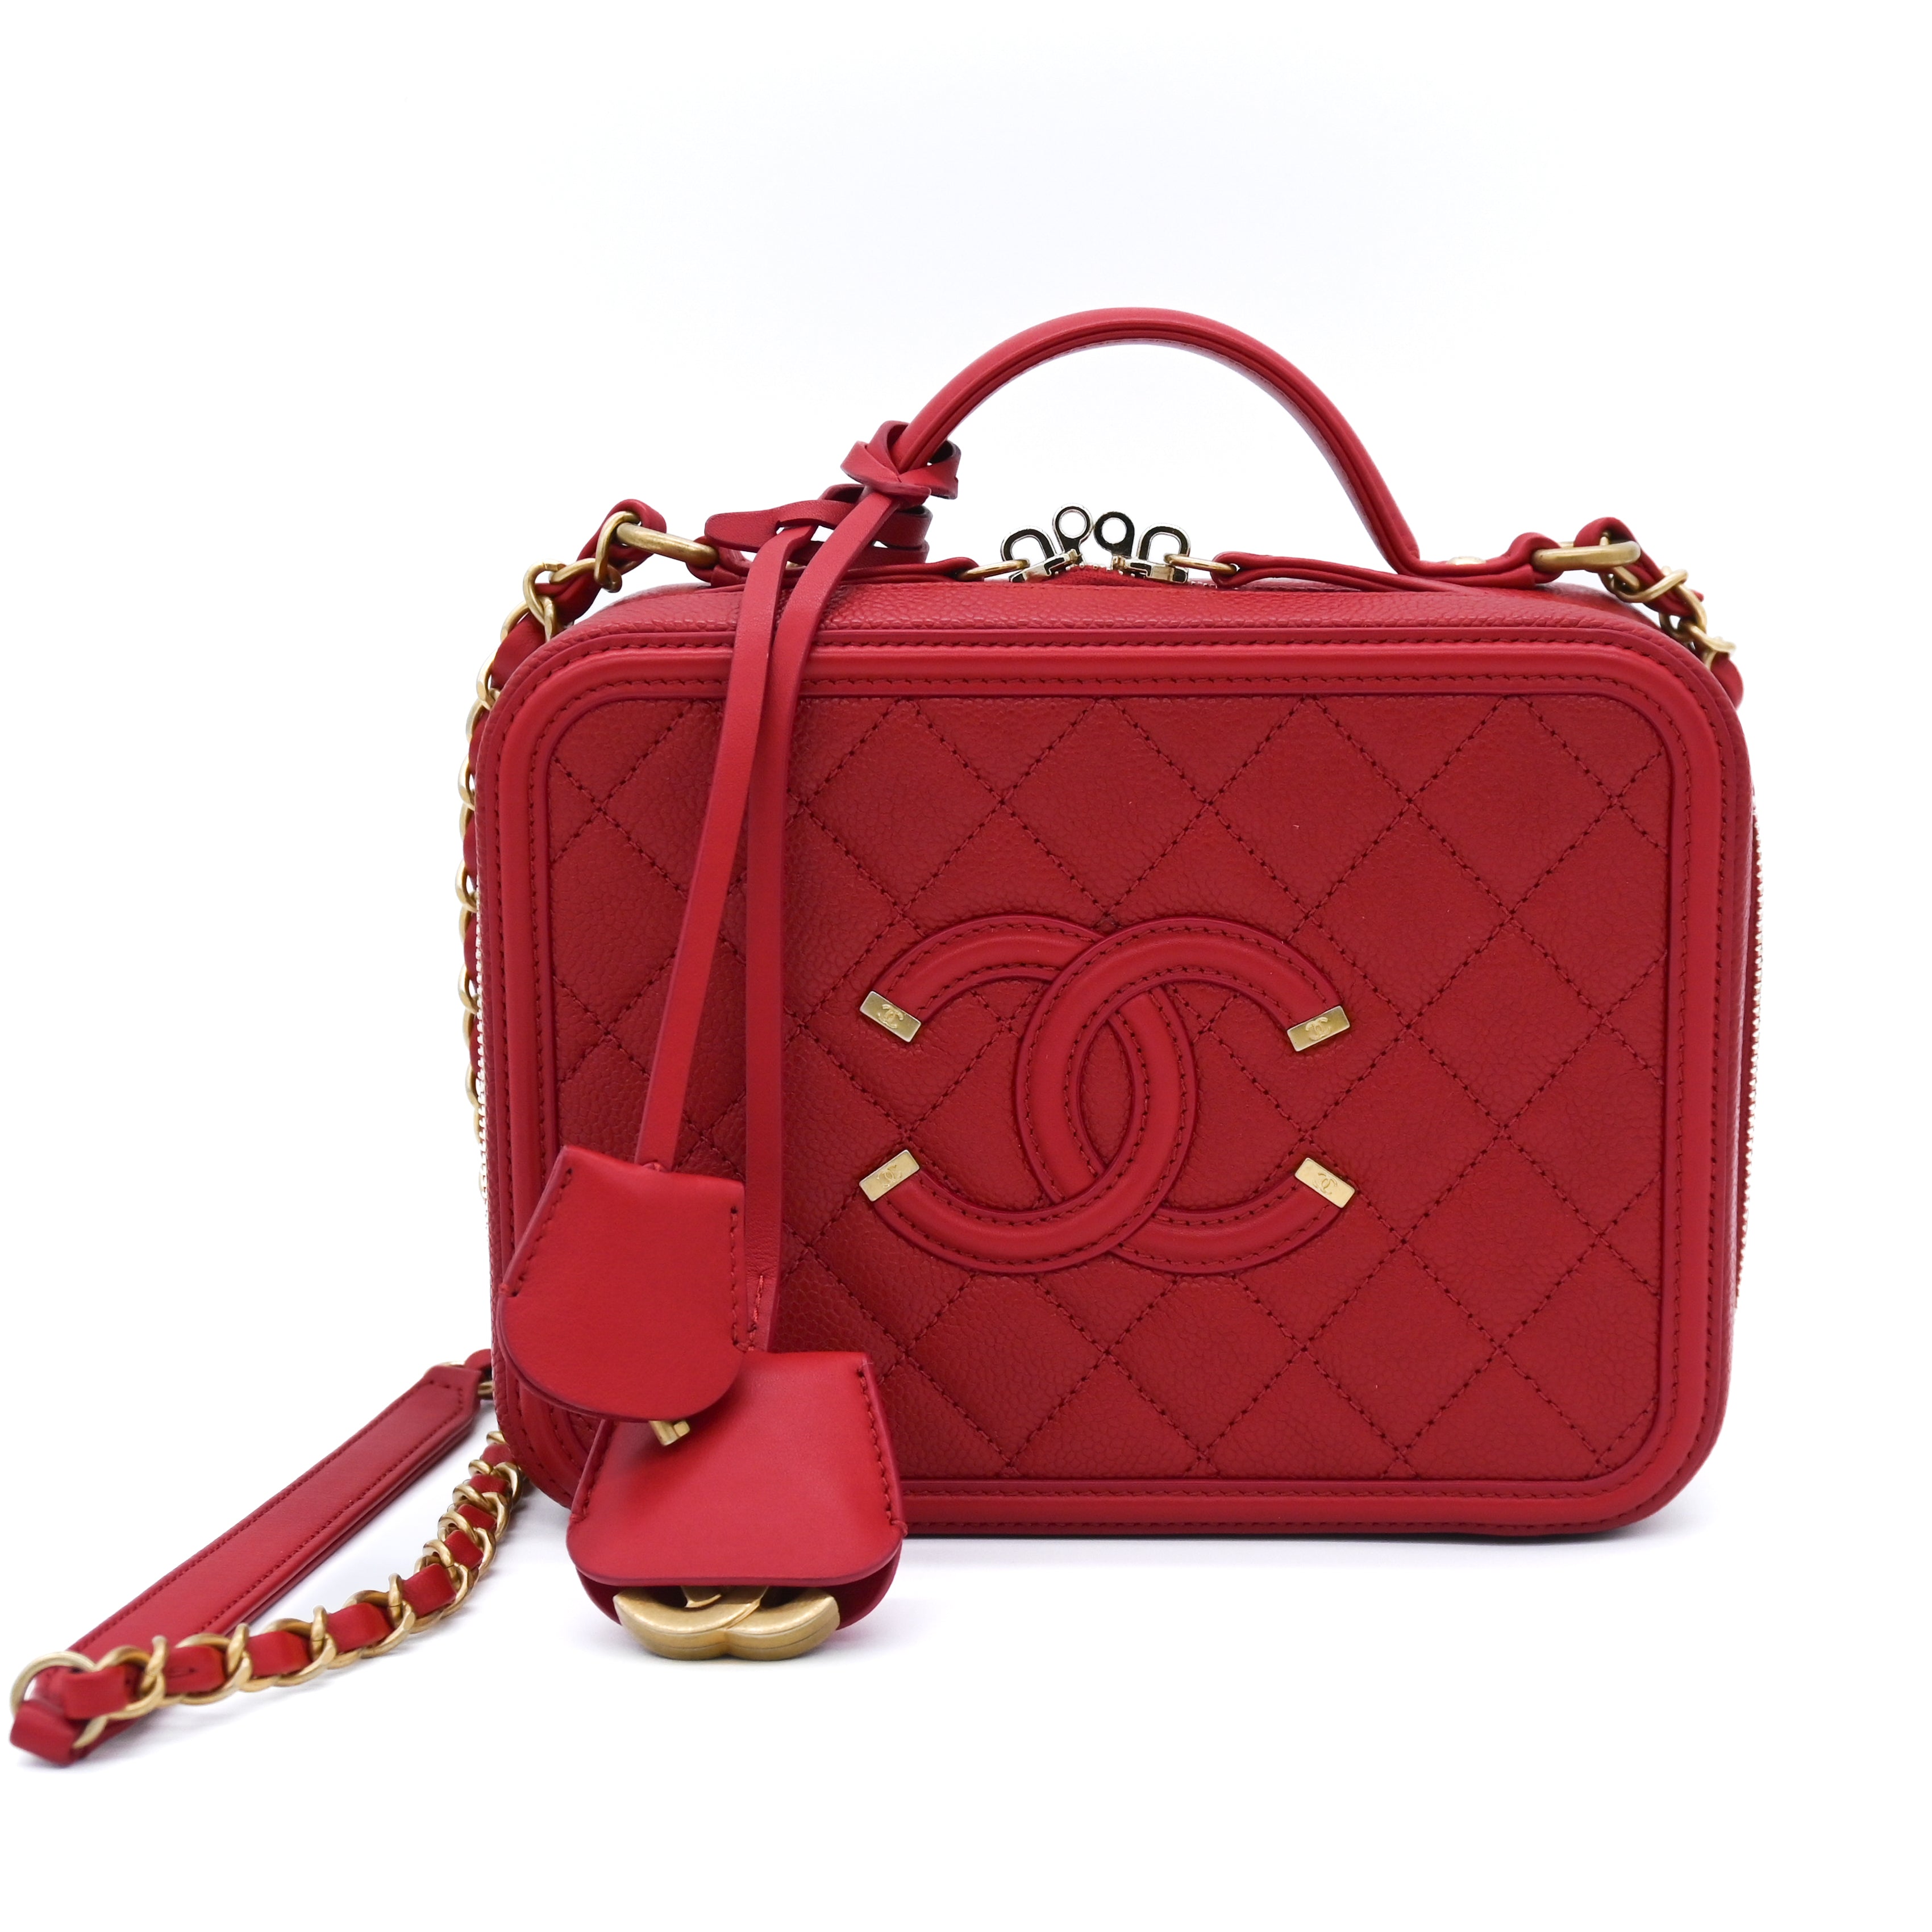 CHANEL Chanel Medium Filigree Vanity Red - Vault 55